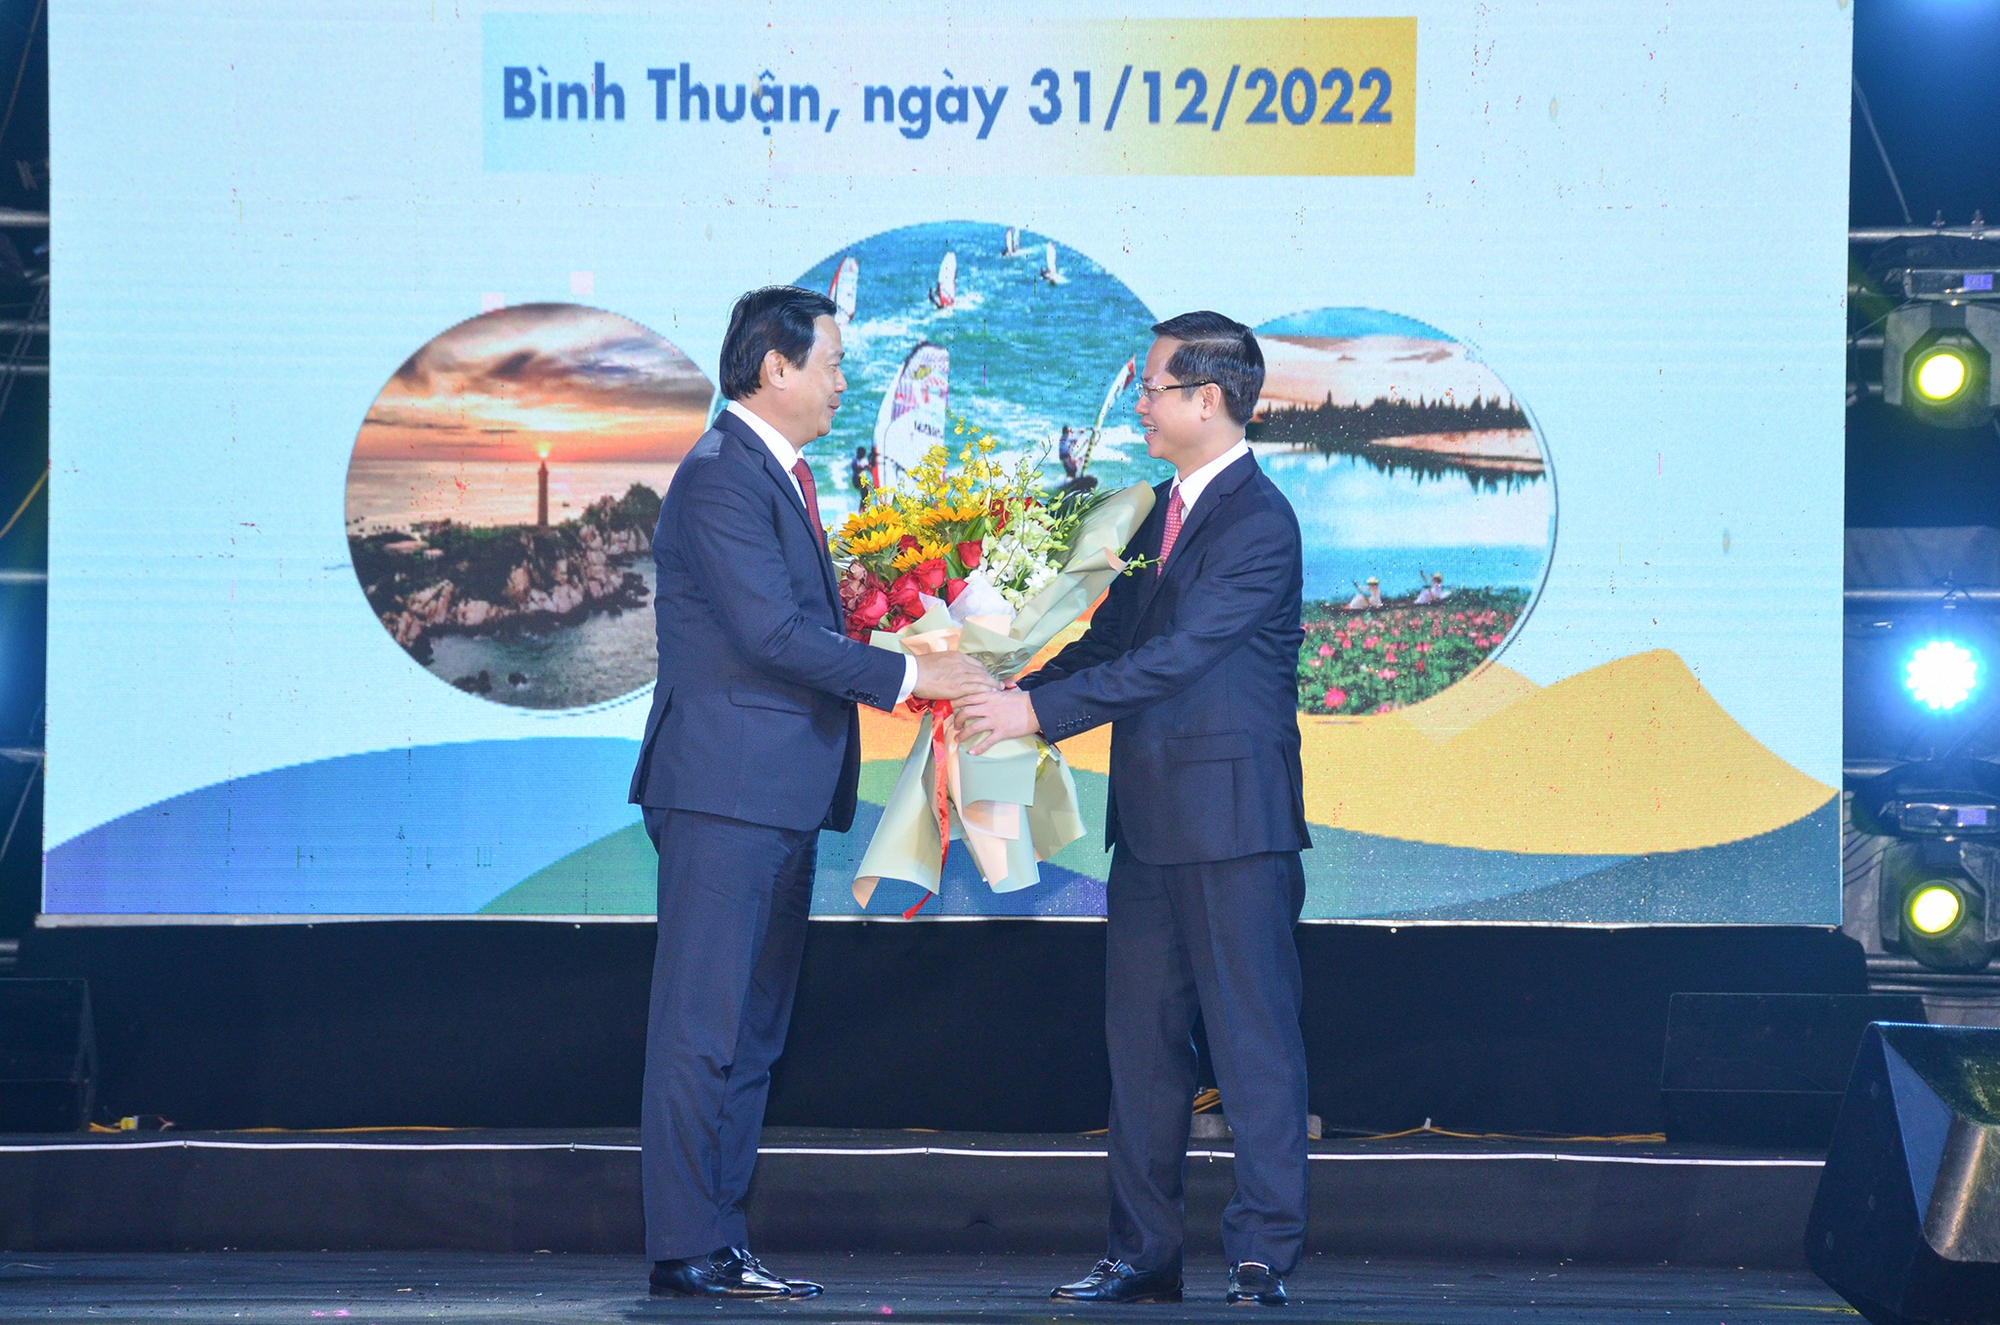 Hàng nghìn người dự Lễ Công bố Năm Du lịch quốc gia 2023 “Bình Thuận - Hội tụ xanh” - Ảnh 3.